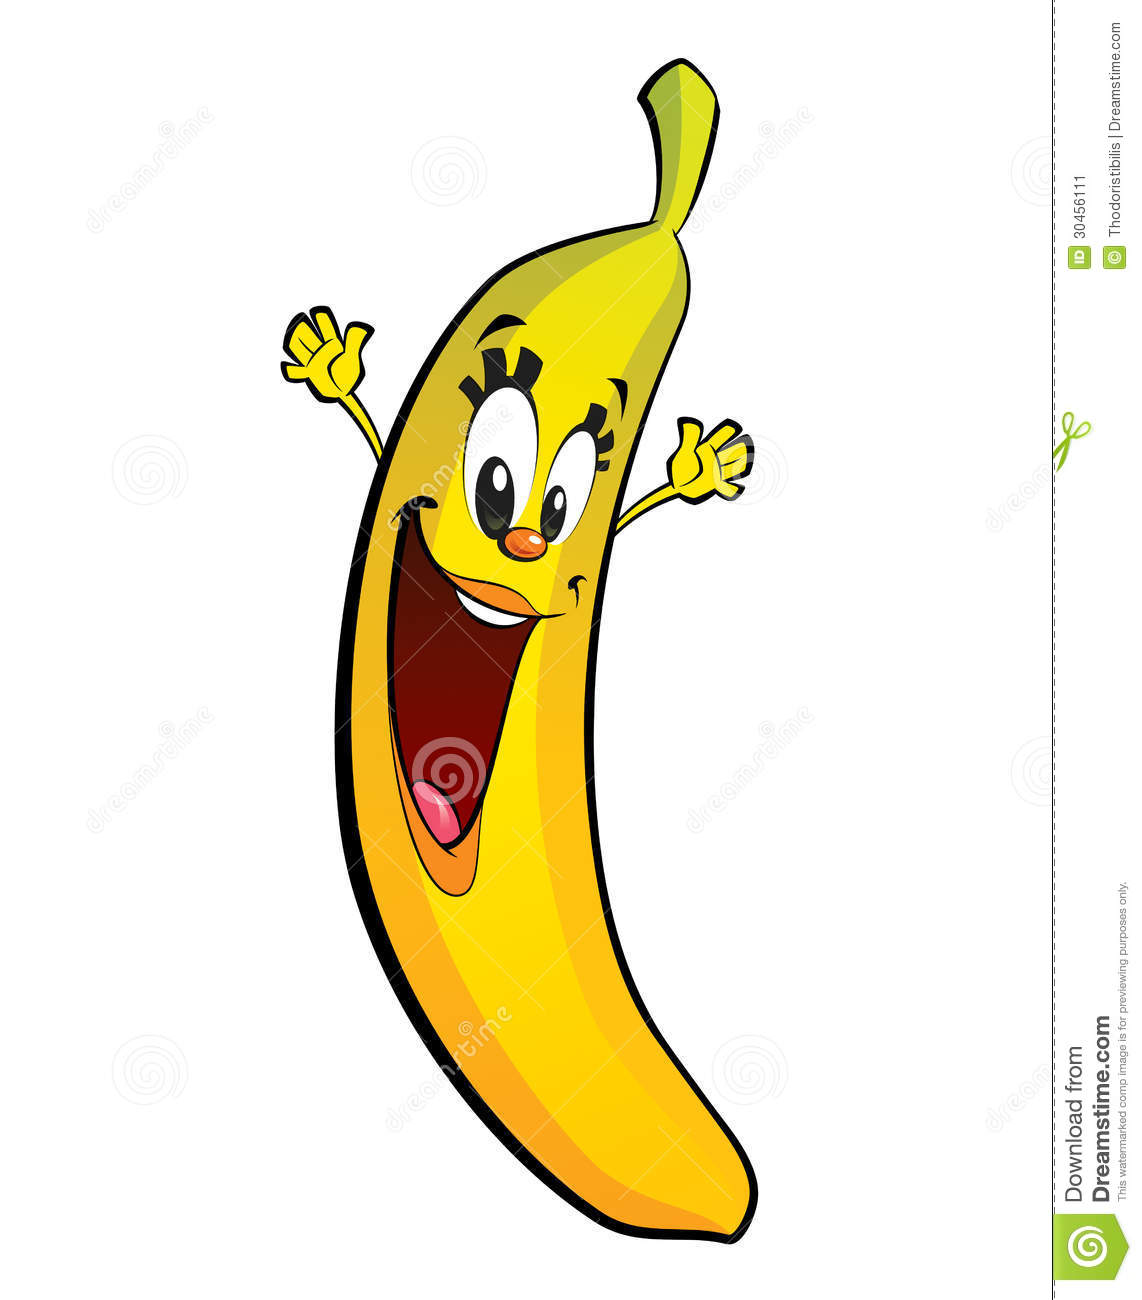 Banana clipart character, Banana character Transparent FREE